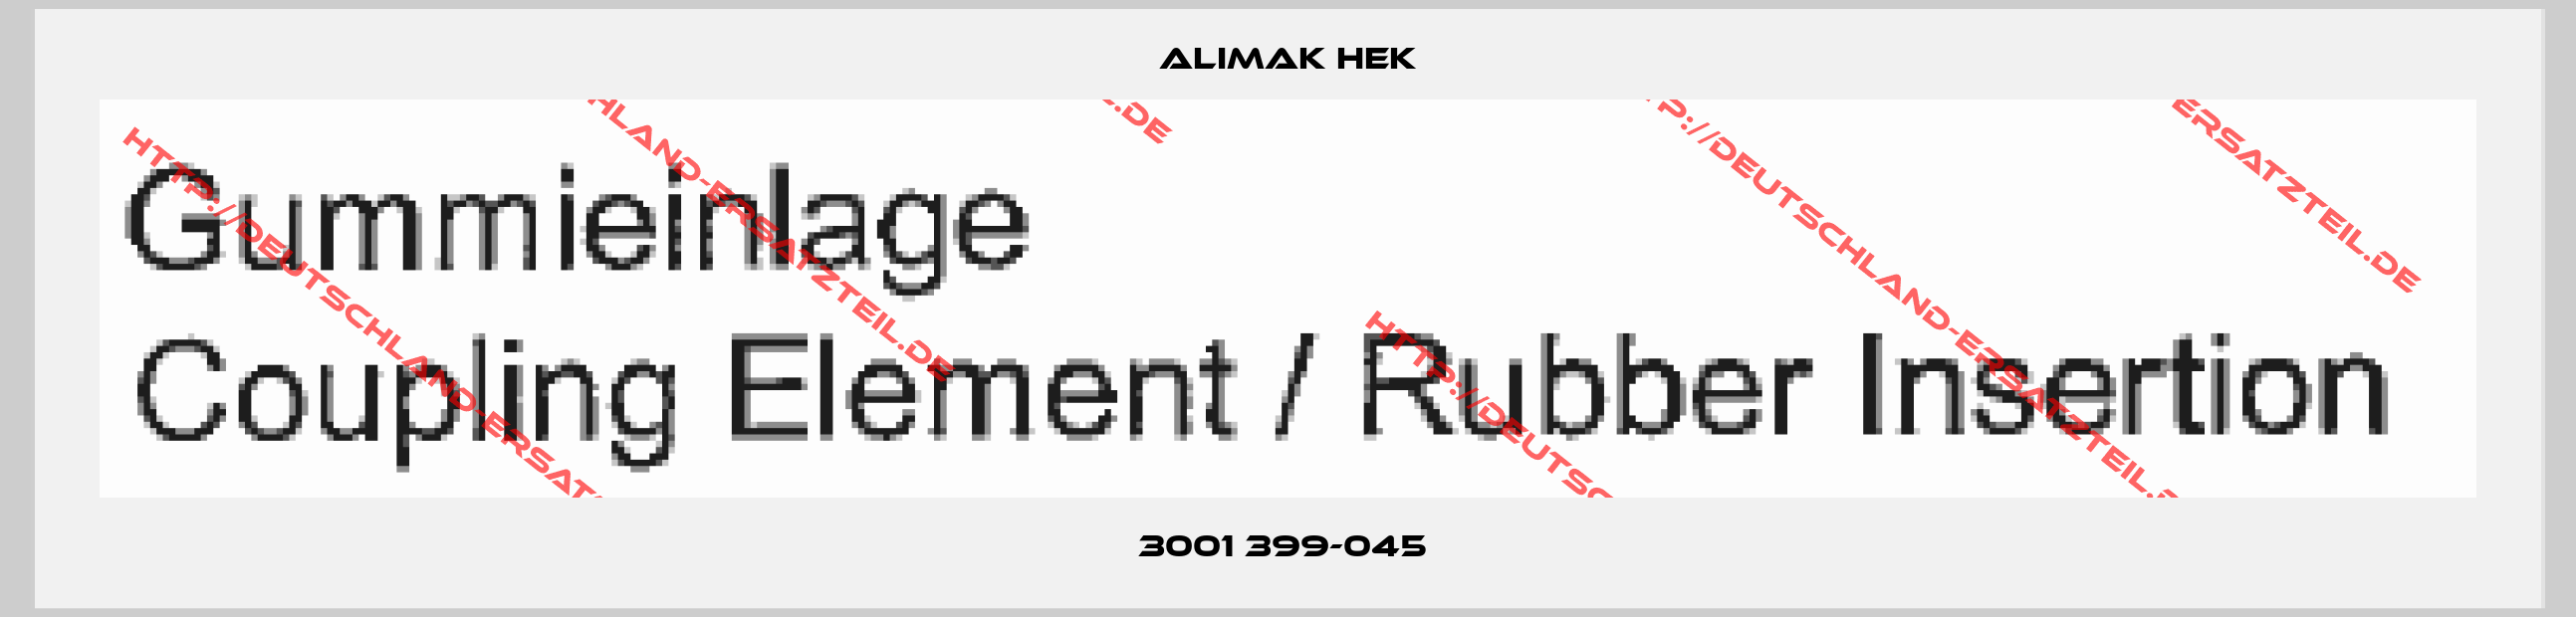 Alimak Hek-3001 399-045 